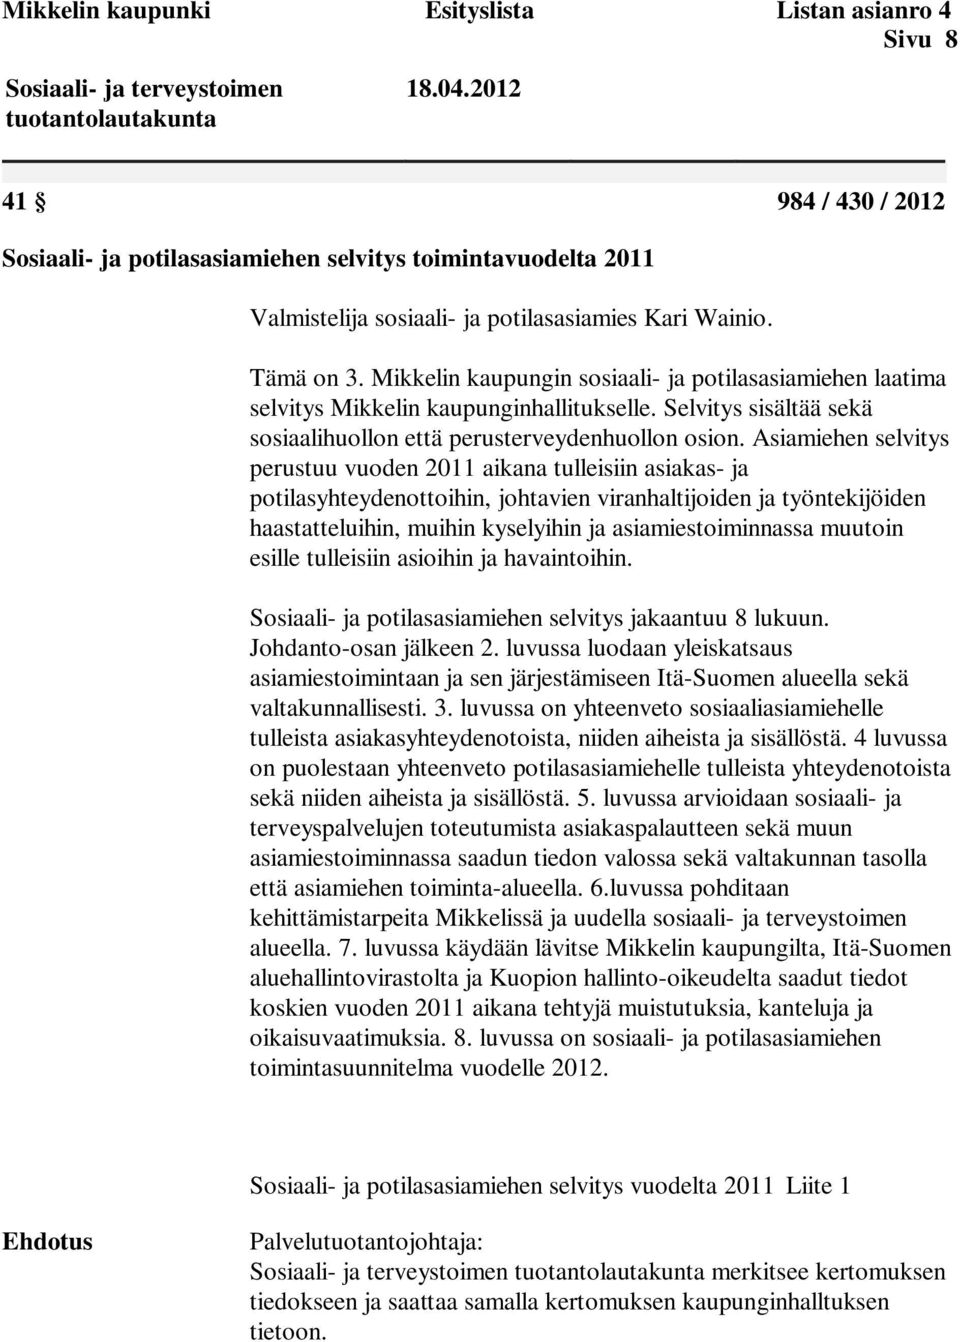 Mikkelin kaupungin sosiaali- ja potilasasiamiehen laatima selvitys Mikkelin kaupunginhallitukselle. Selvitys sisältää sekä sosiaalihuollon että perusterveydenhuollon osion.